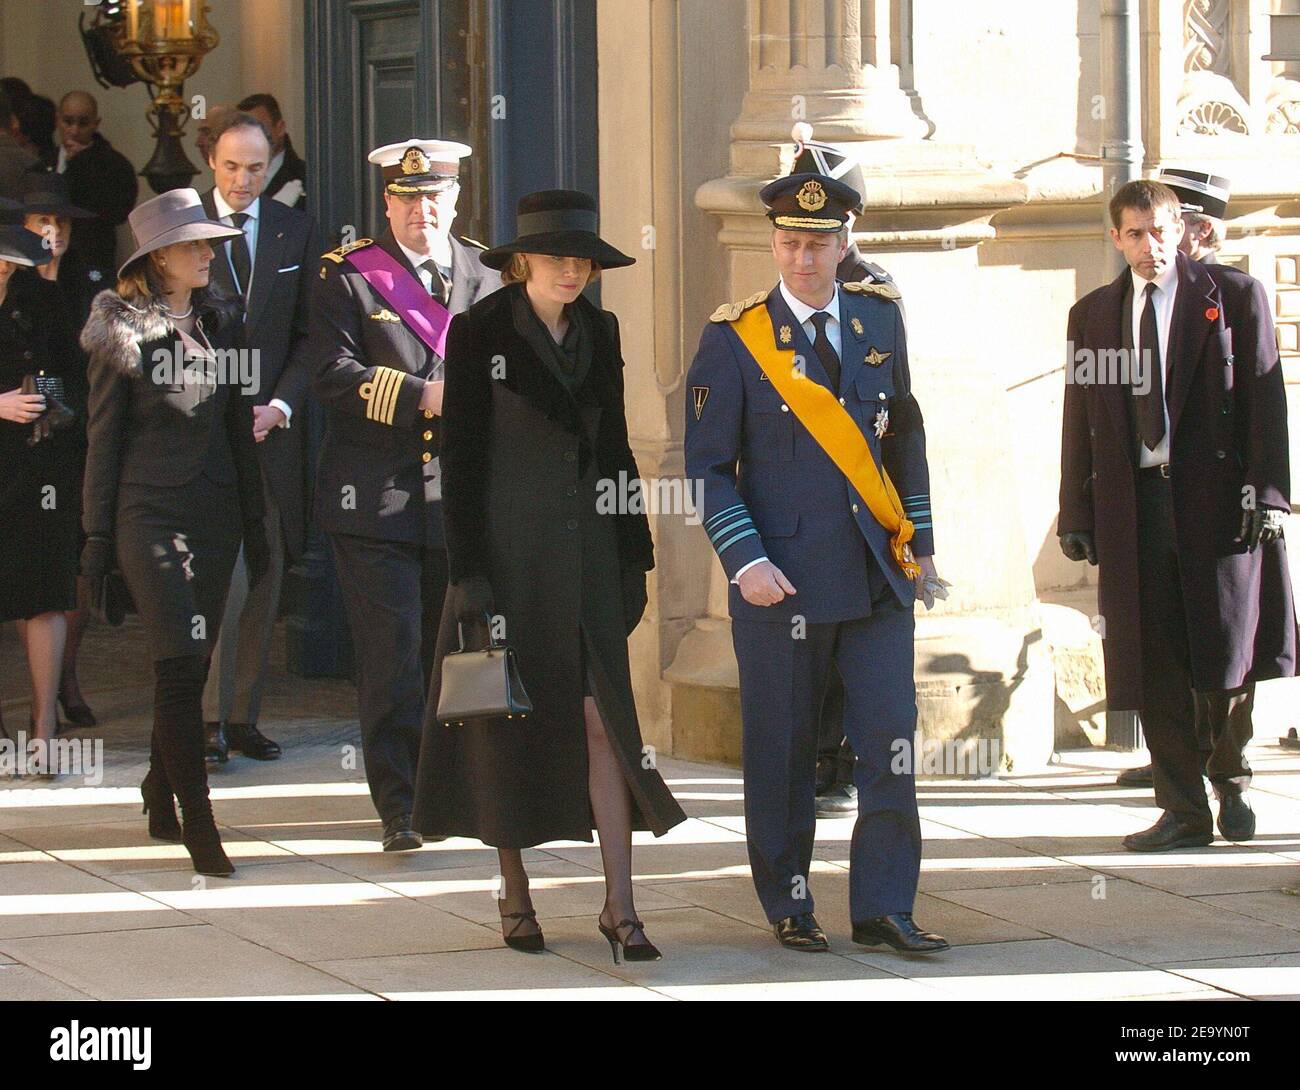 (L-R) el príncipe Laurent y la princesa Claire de Bélgica, el príncipe Philippe y la princesa Mathilde de Bélgica asisten al funeral de la gran duquesa Charlotte de Luxemburgo en Luxemburgo el 15 de enero de 2005. La Gran Duquesa murió de cáncer de pulmón a los 77 años, el 10 de enero de 2005. Foto de Klein-Nebinger/ABACA. Foto de stock